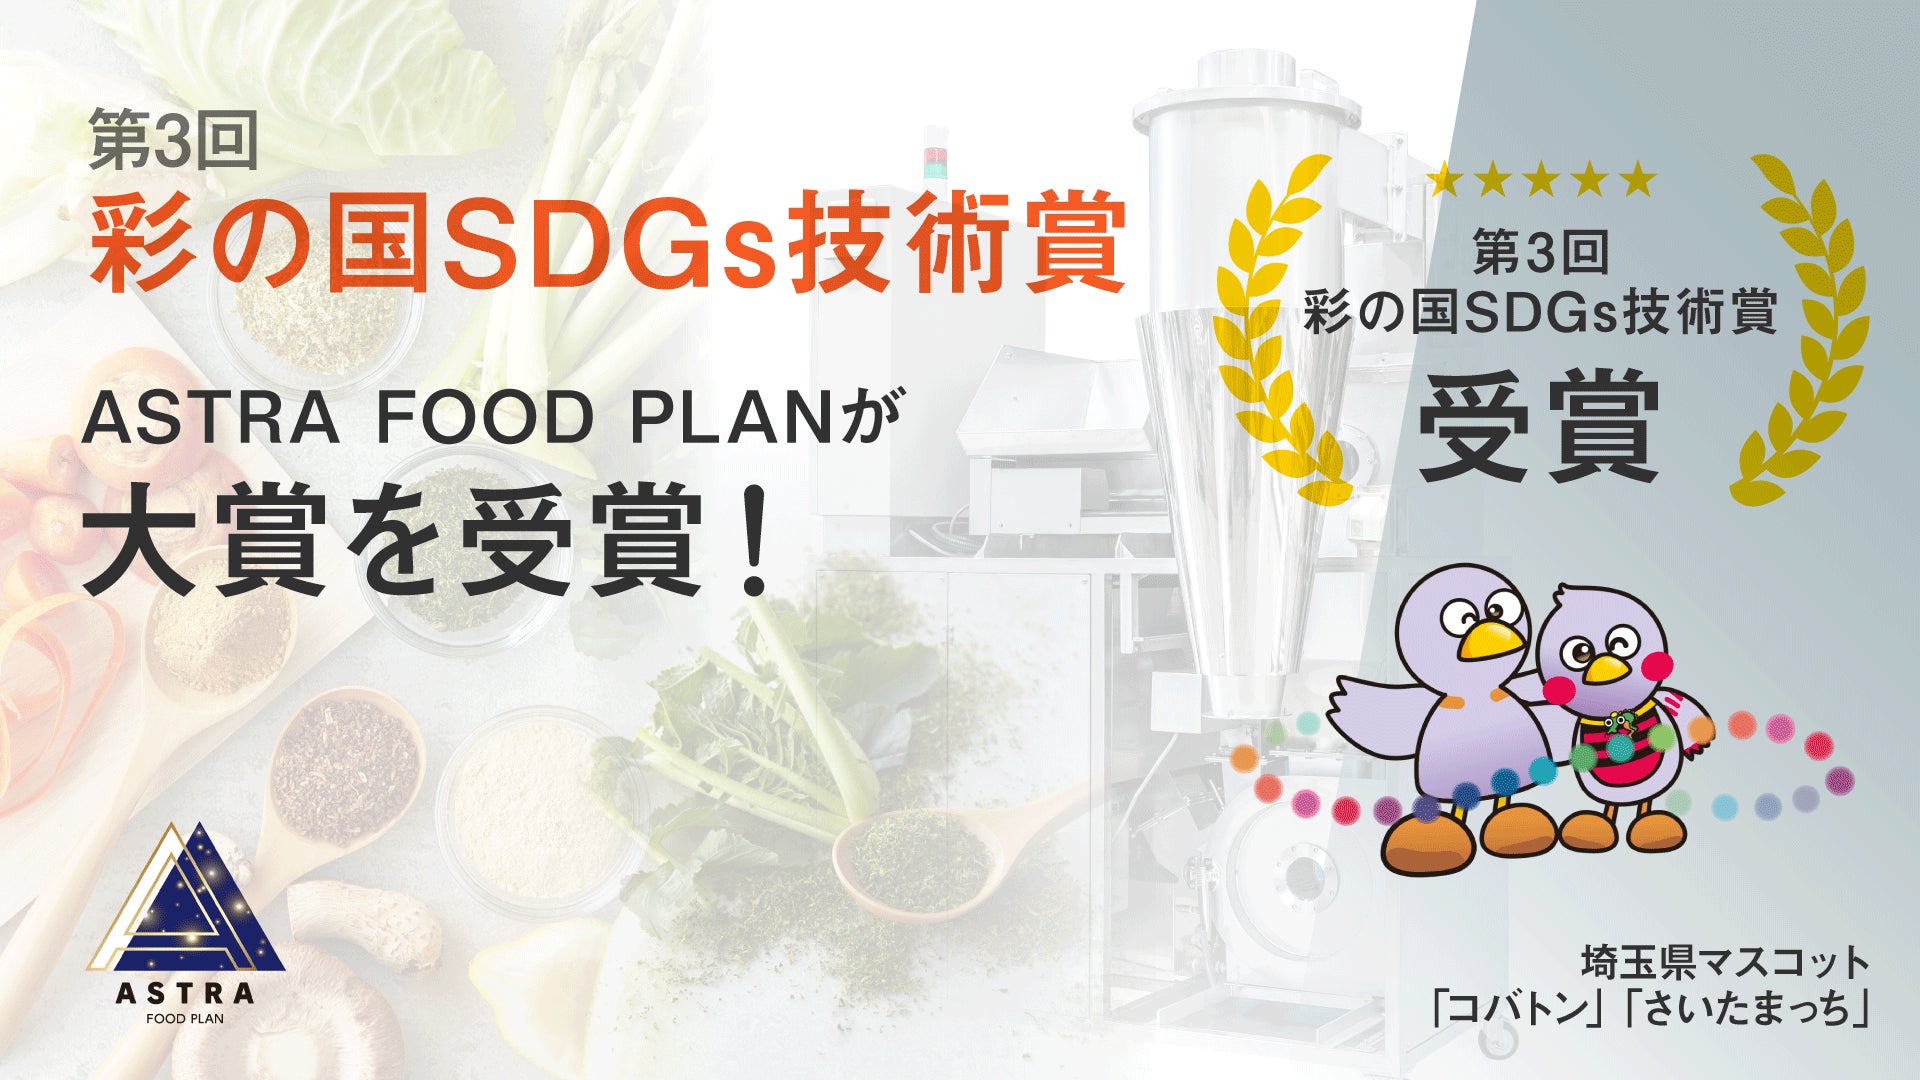 かくれフードロスに向き合うASTRA FOOD PLAN、埼玉県主催の第3回「彩の国SDGs技術賞」で大賞を受賞